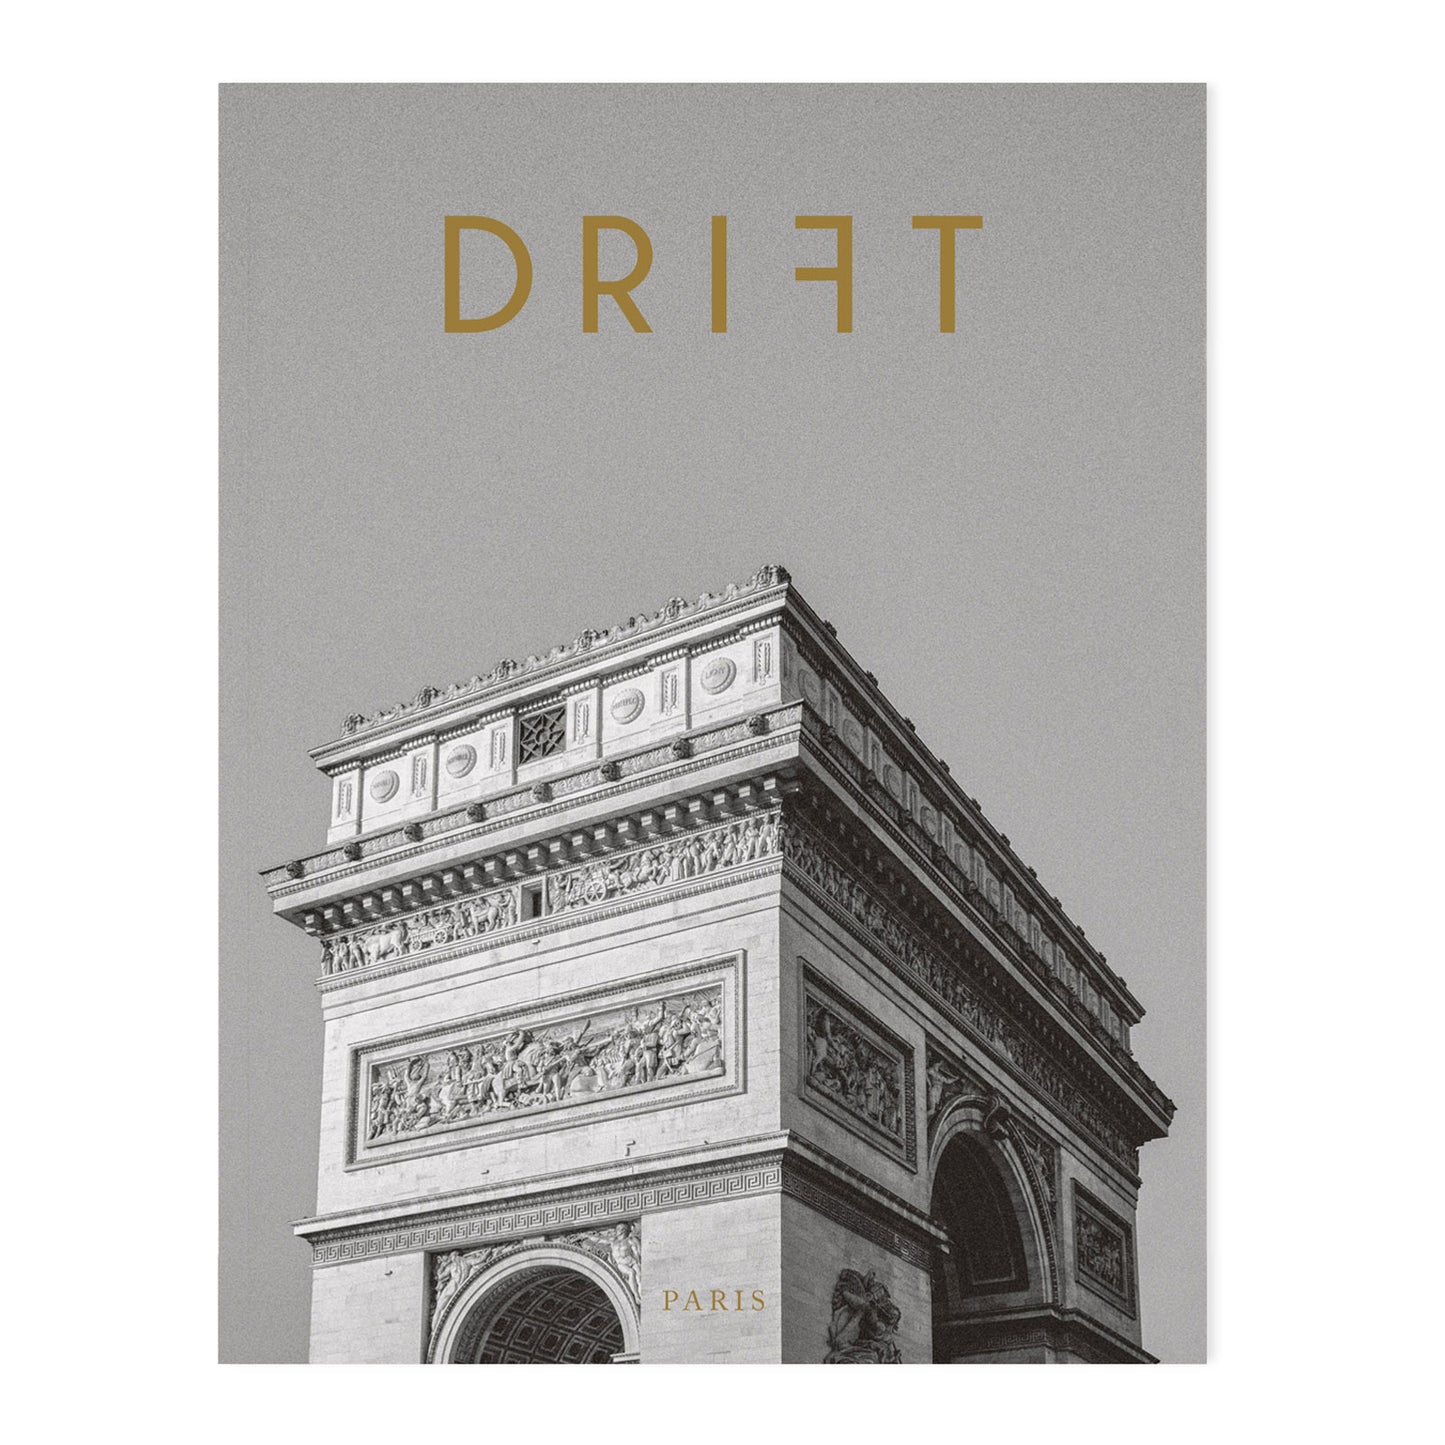 Drift Magazine, Volume 12: Paris